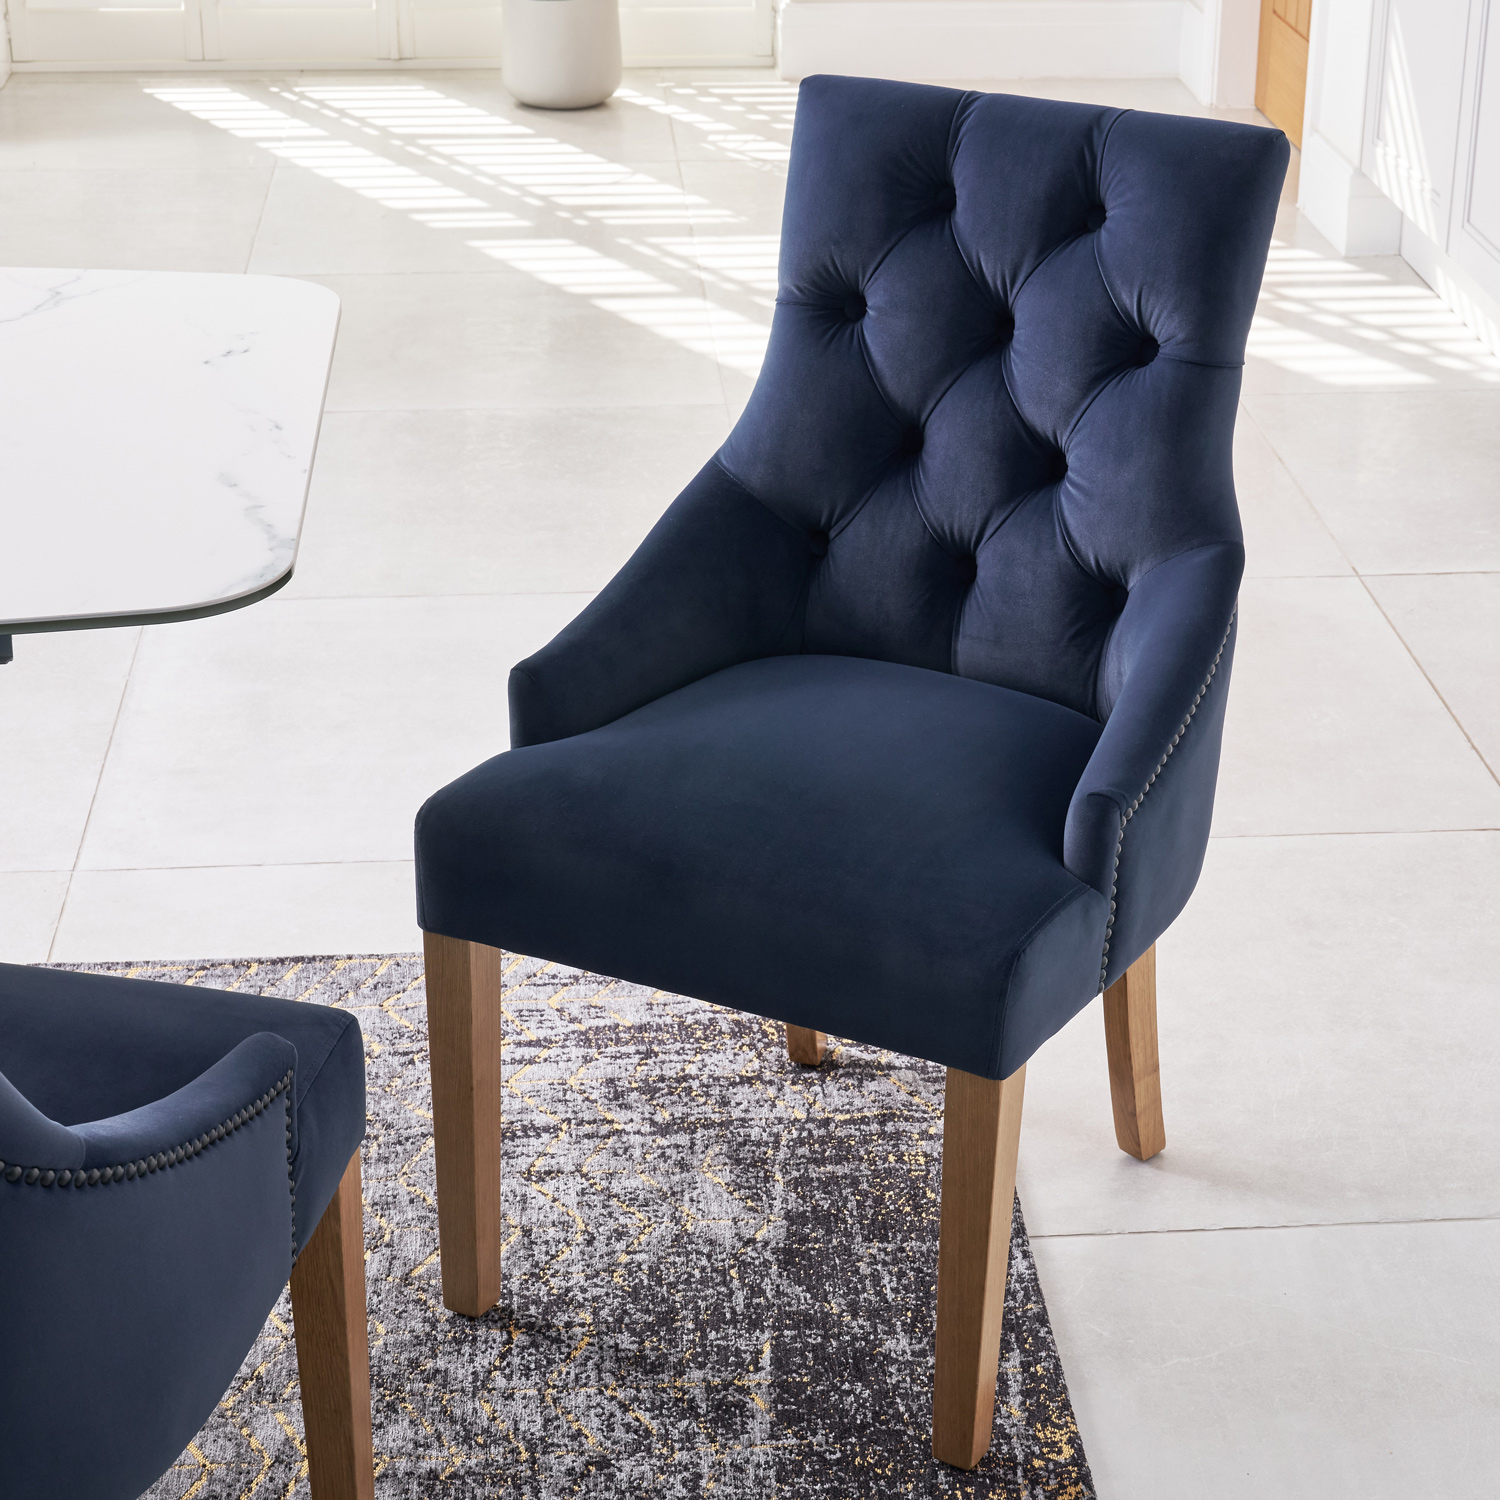 New Chelsea Dark Blue Brushed Velvet Scoop Back Dining Chair – Oak Legs